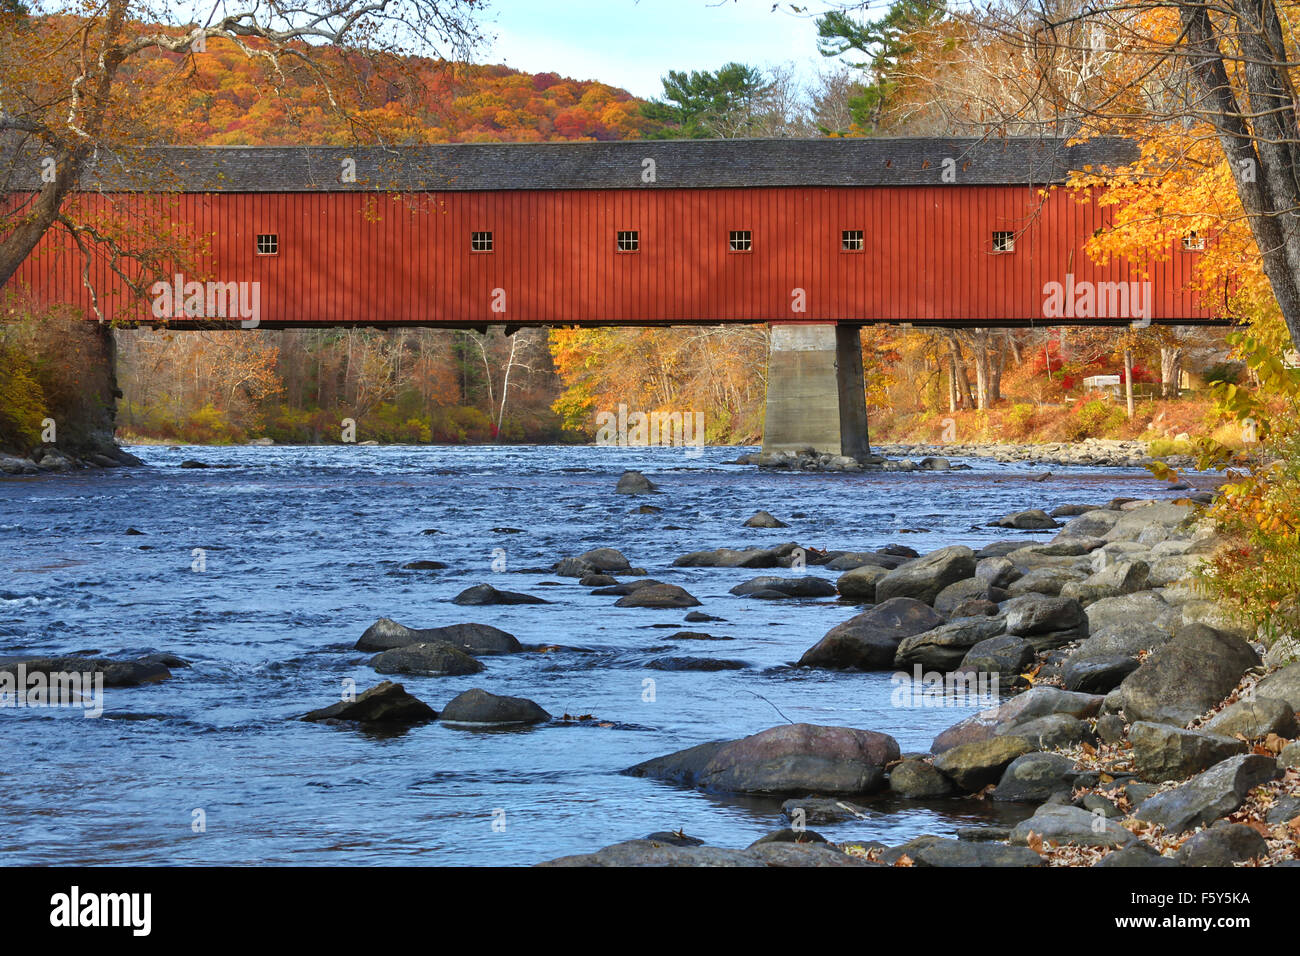 West Cornwall ponte coperto oltre le rapide del fiume Housatonic, con colorati caduta delle foglie in ottobre, Connecticut. Foto Stock